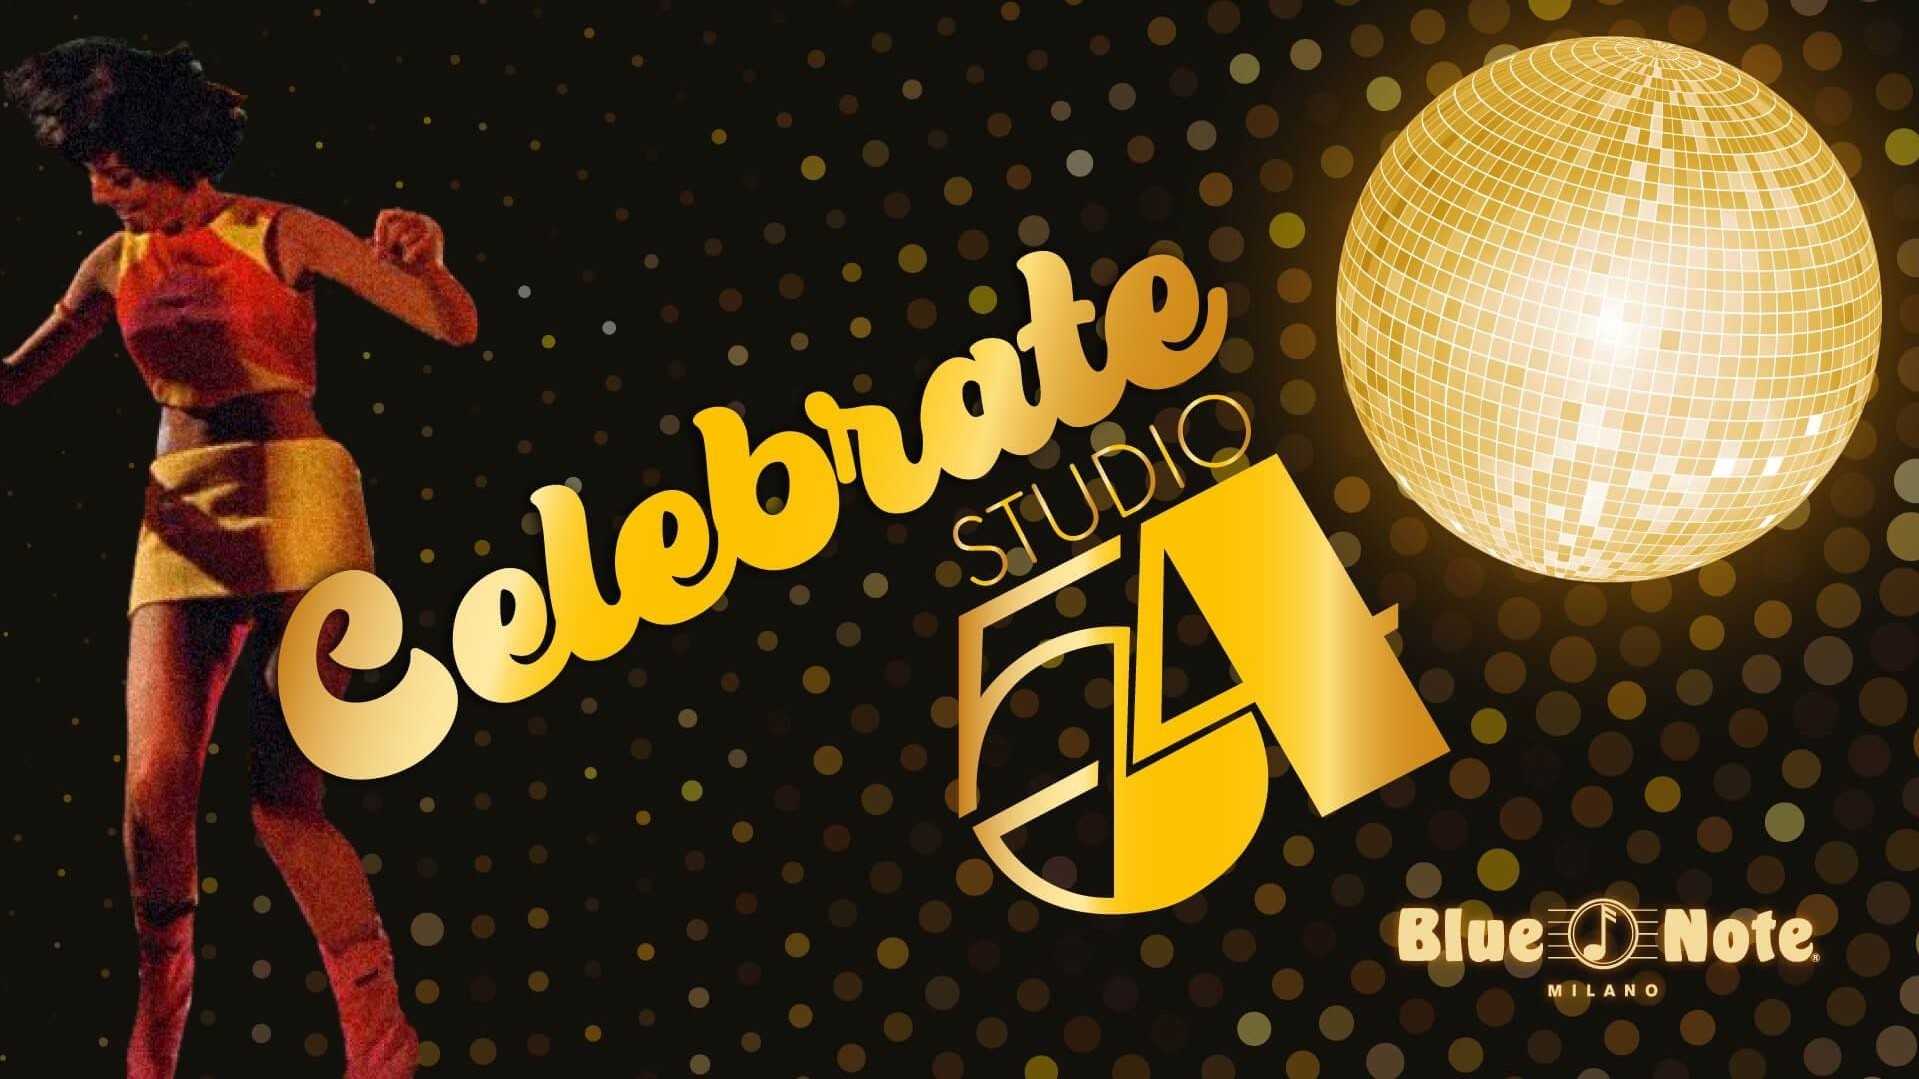 Celebrate Studio 54!